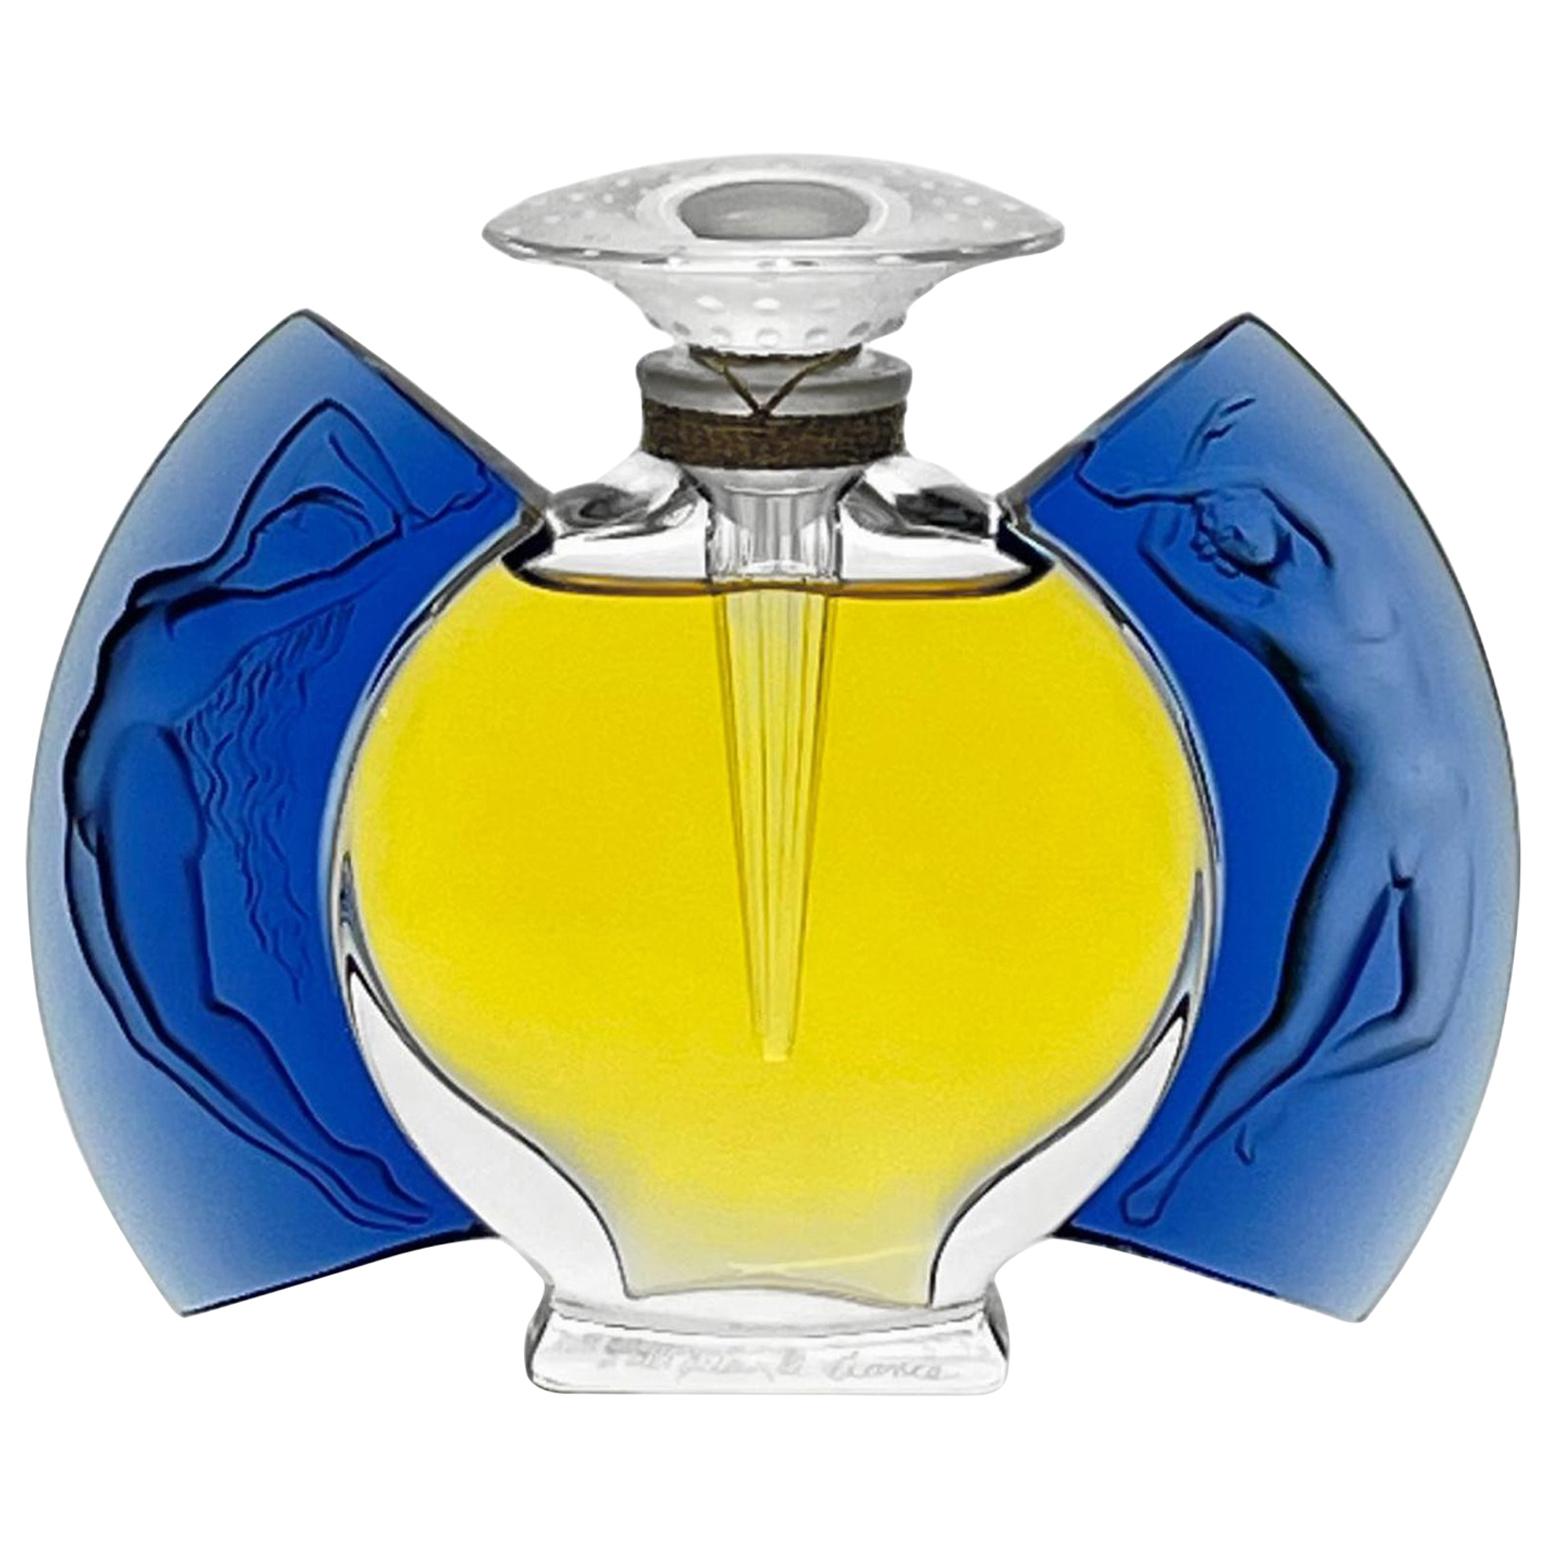 Limited Edition "Jour et Nuit" Perfume Bottle by Marie Claude Lalique